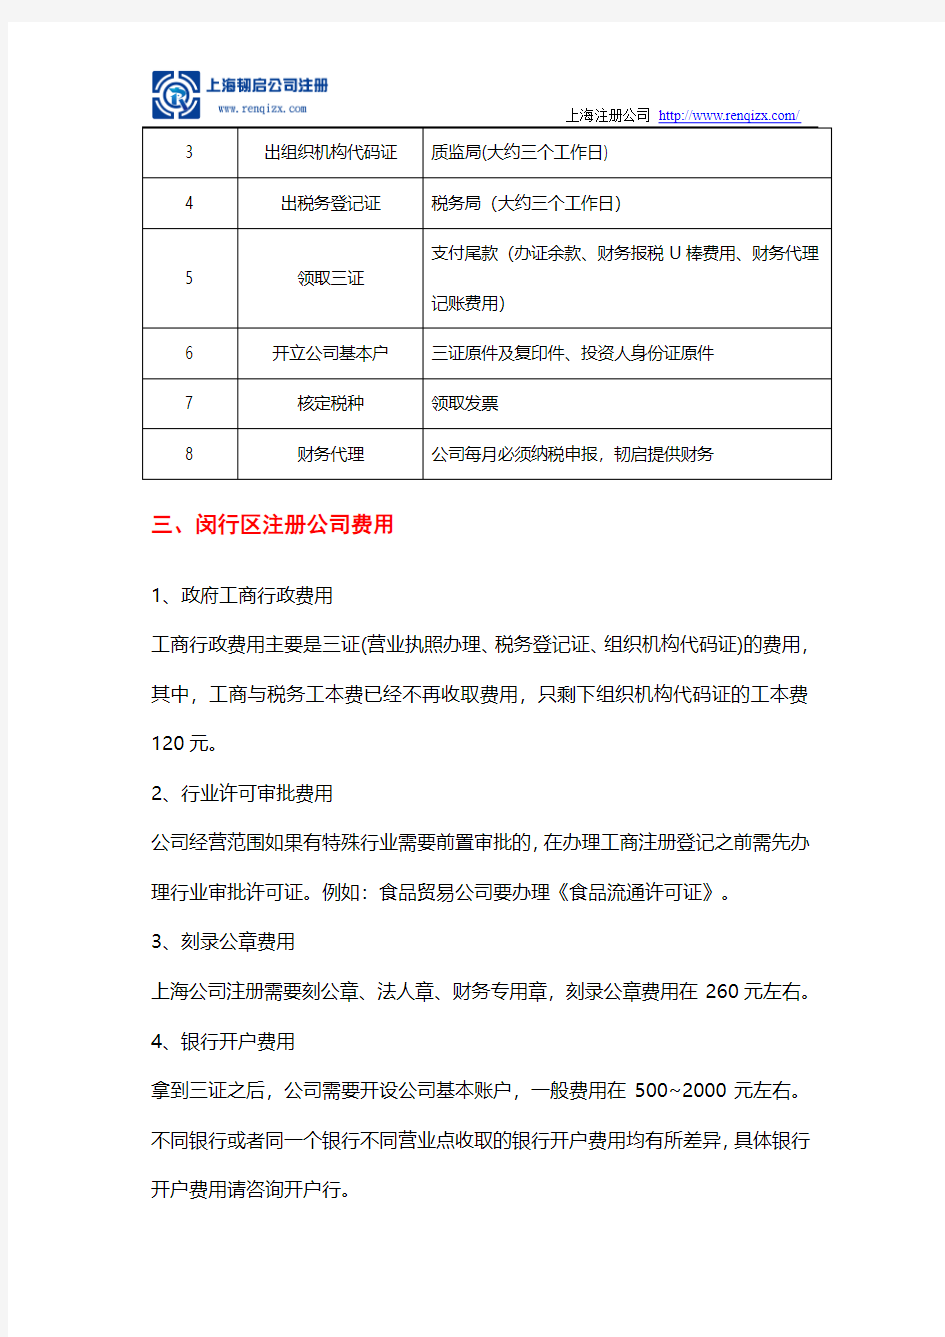 上海闵行区注册公司流程、费用及所需材料